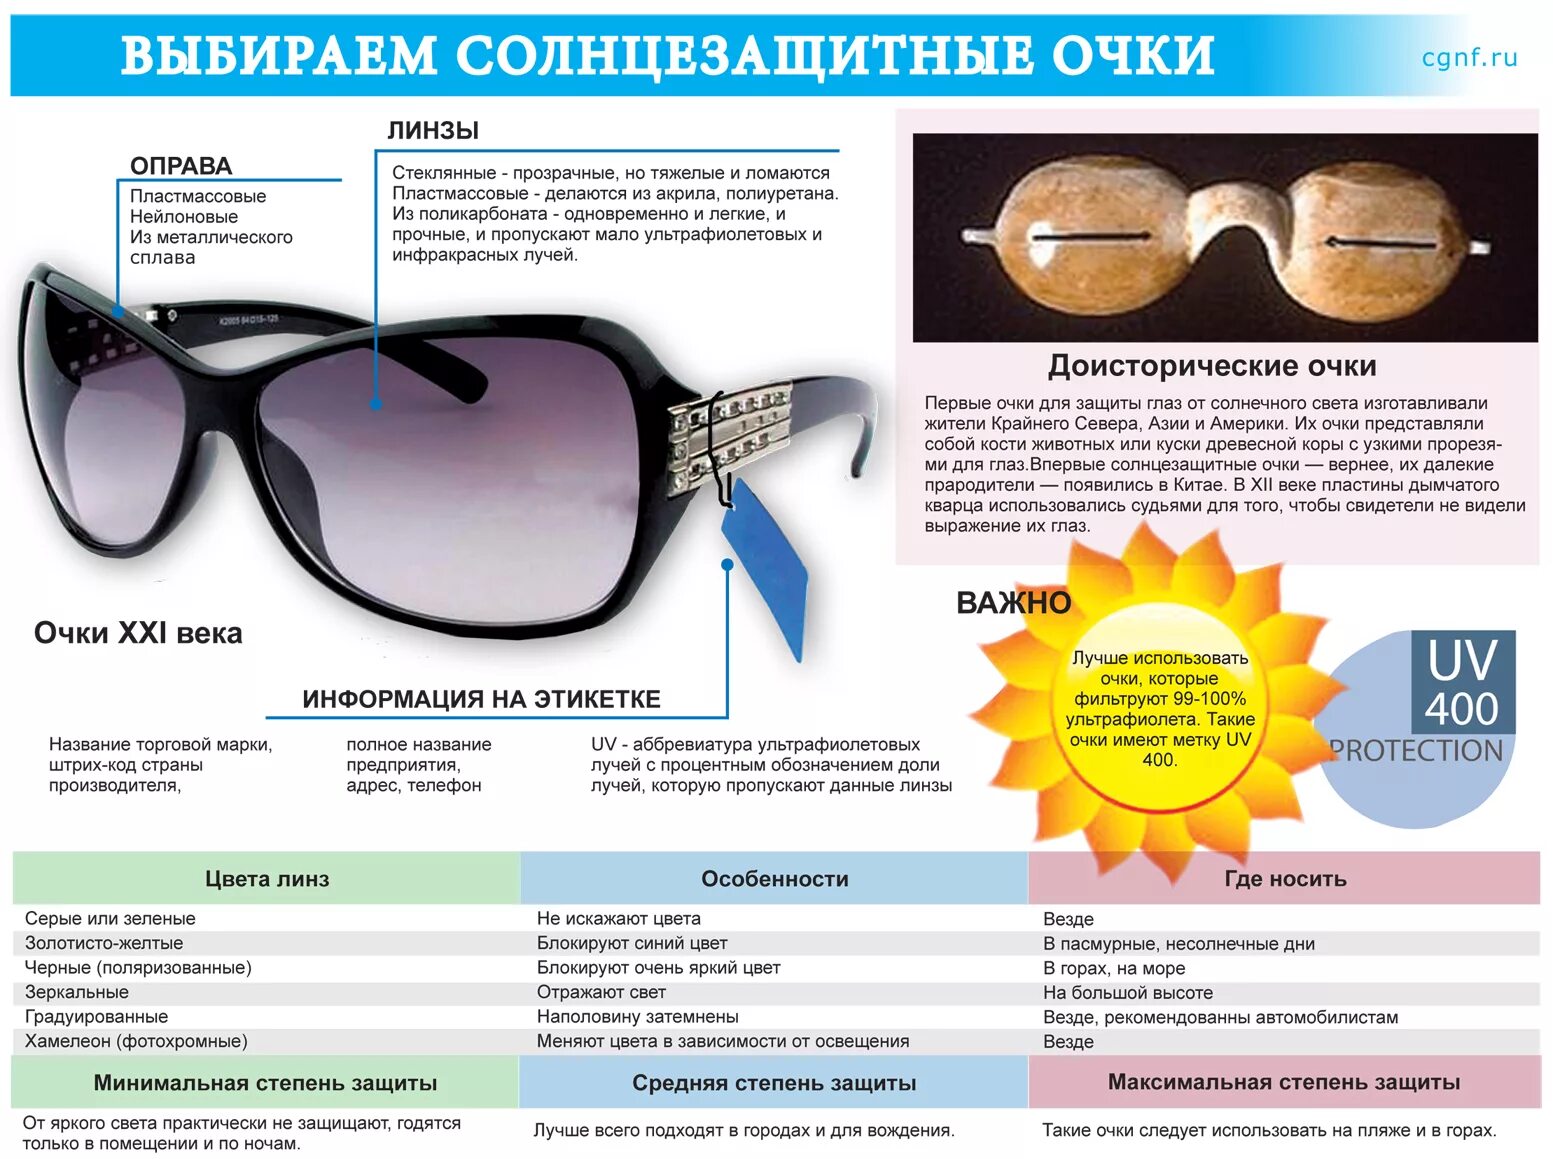 Солнцезащитные очки как правильно выбрать степень защиты от солнца. Уровни защиты солнцезащитных очков. Маркировка солнцезащитных очков. Описание солнечных очков.